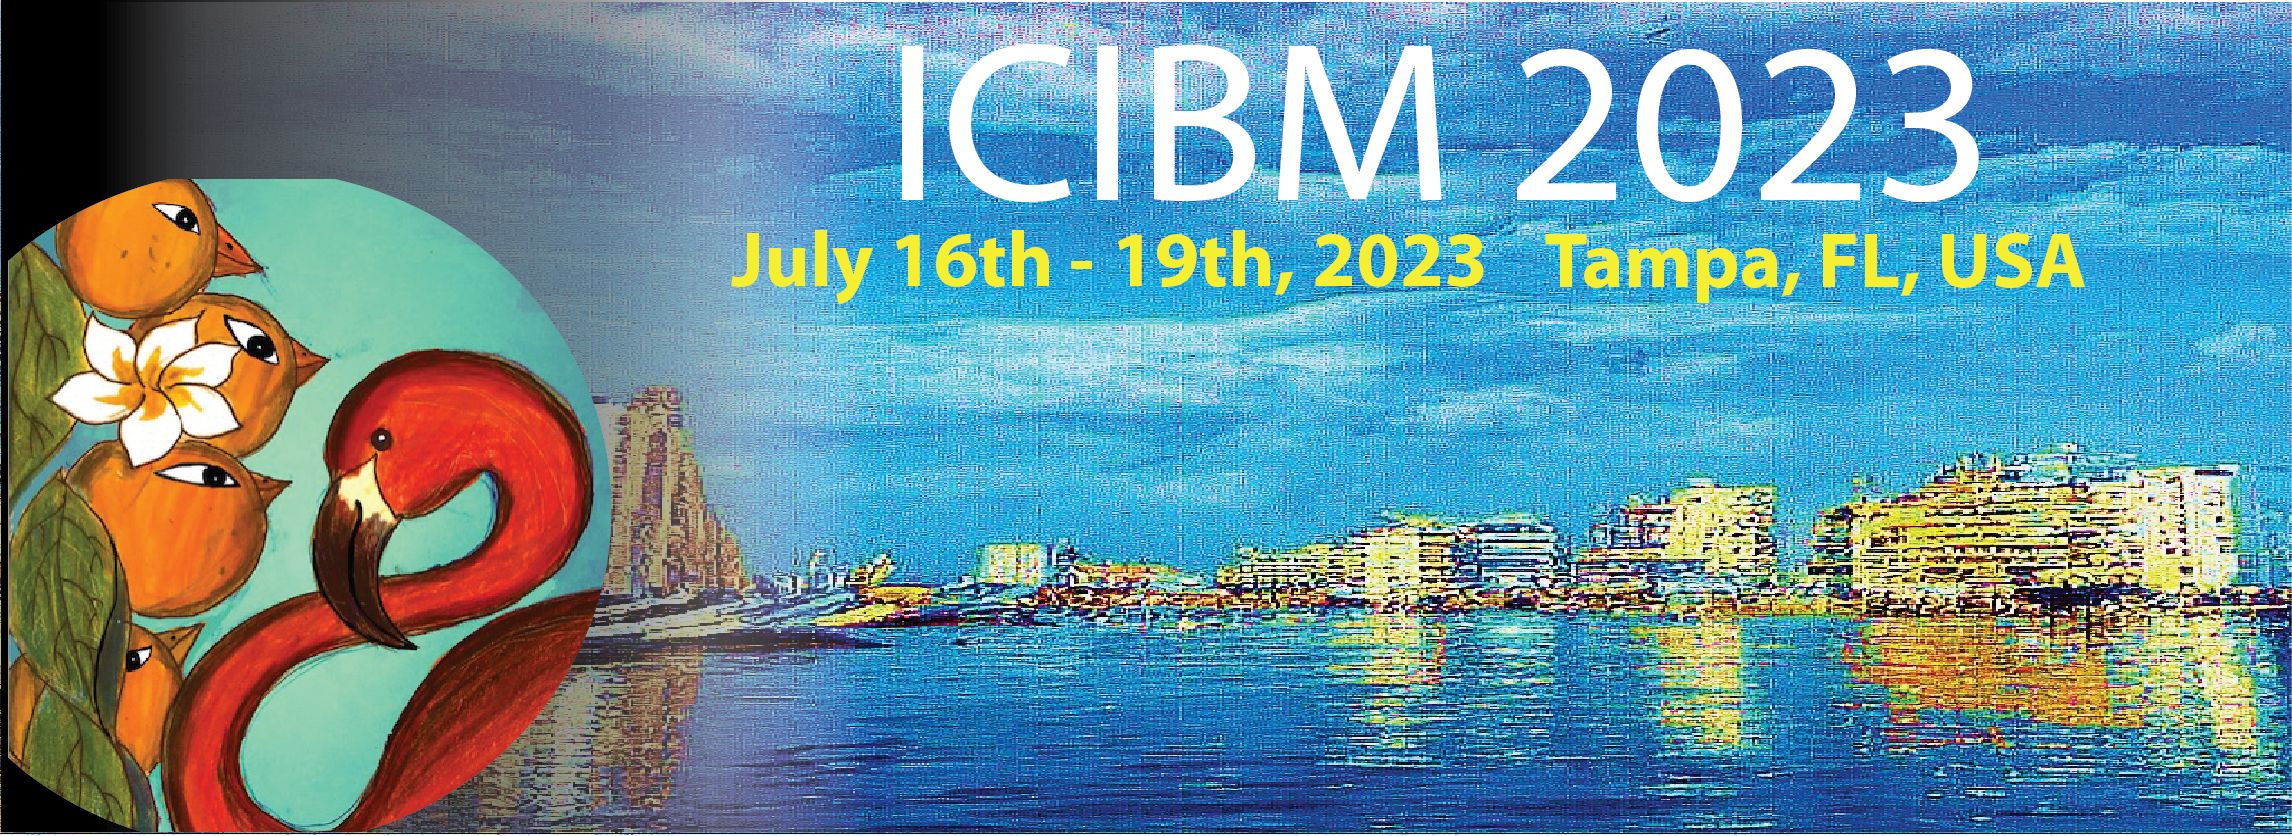 ICIBM 2022